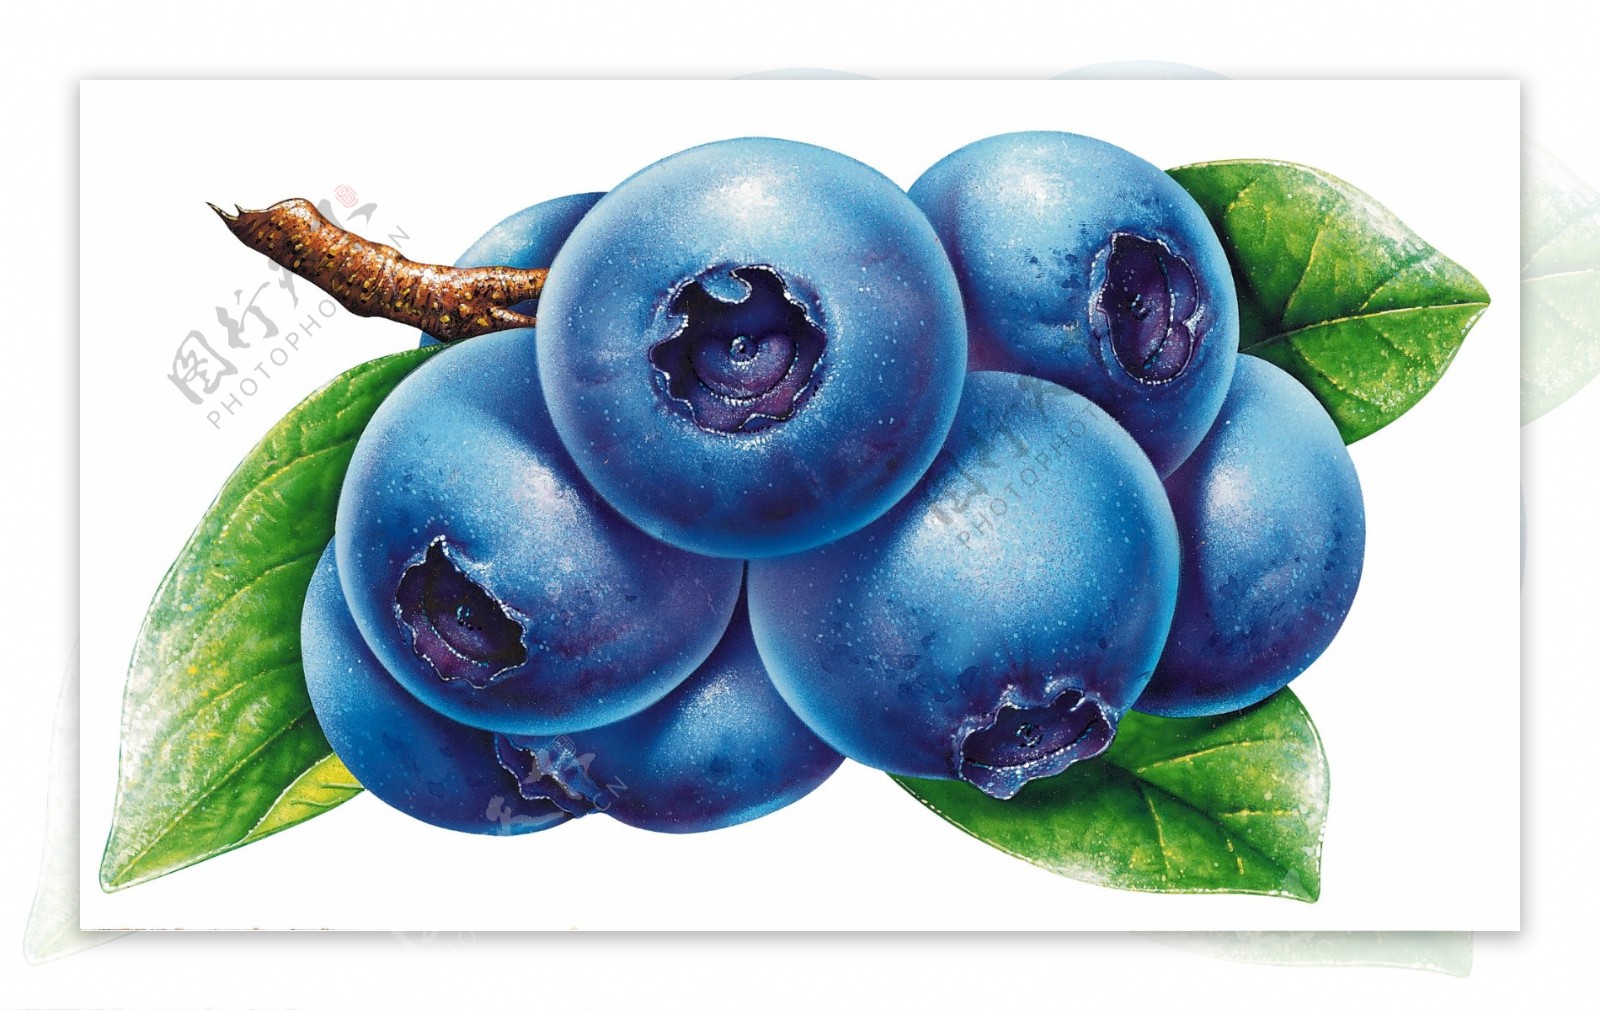 蓝莓蓝莓果